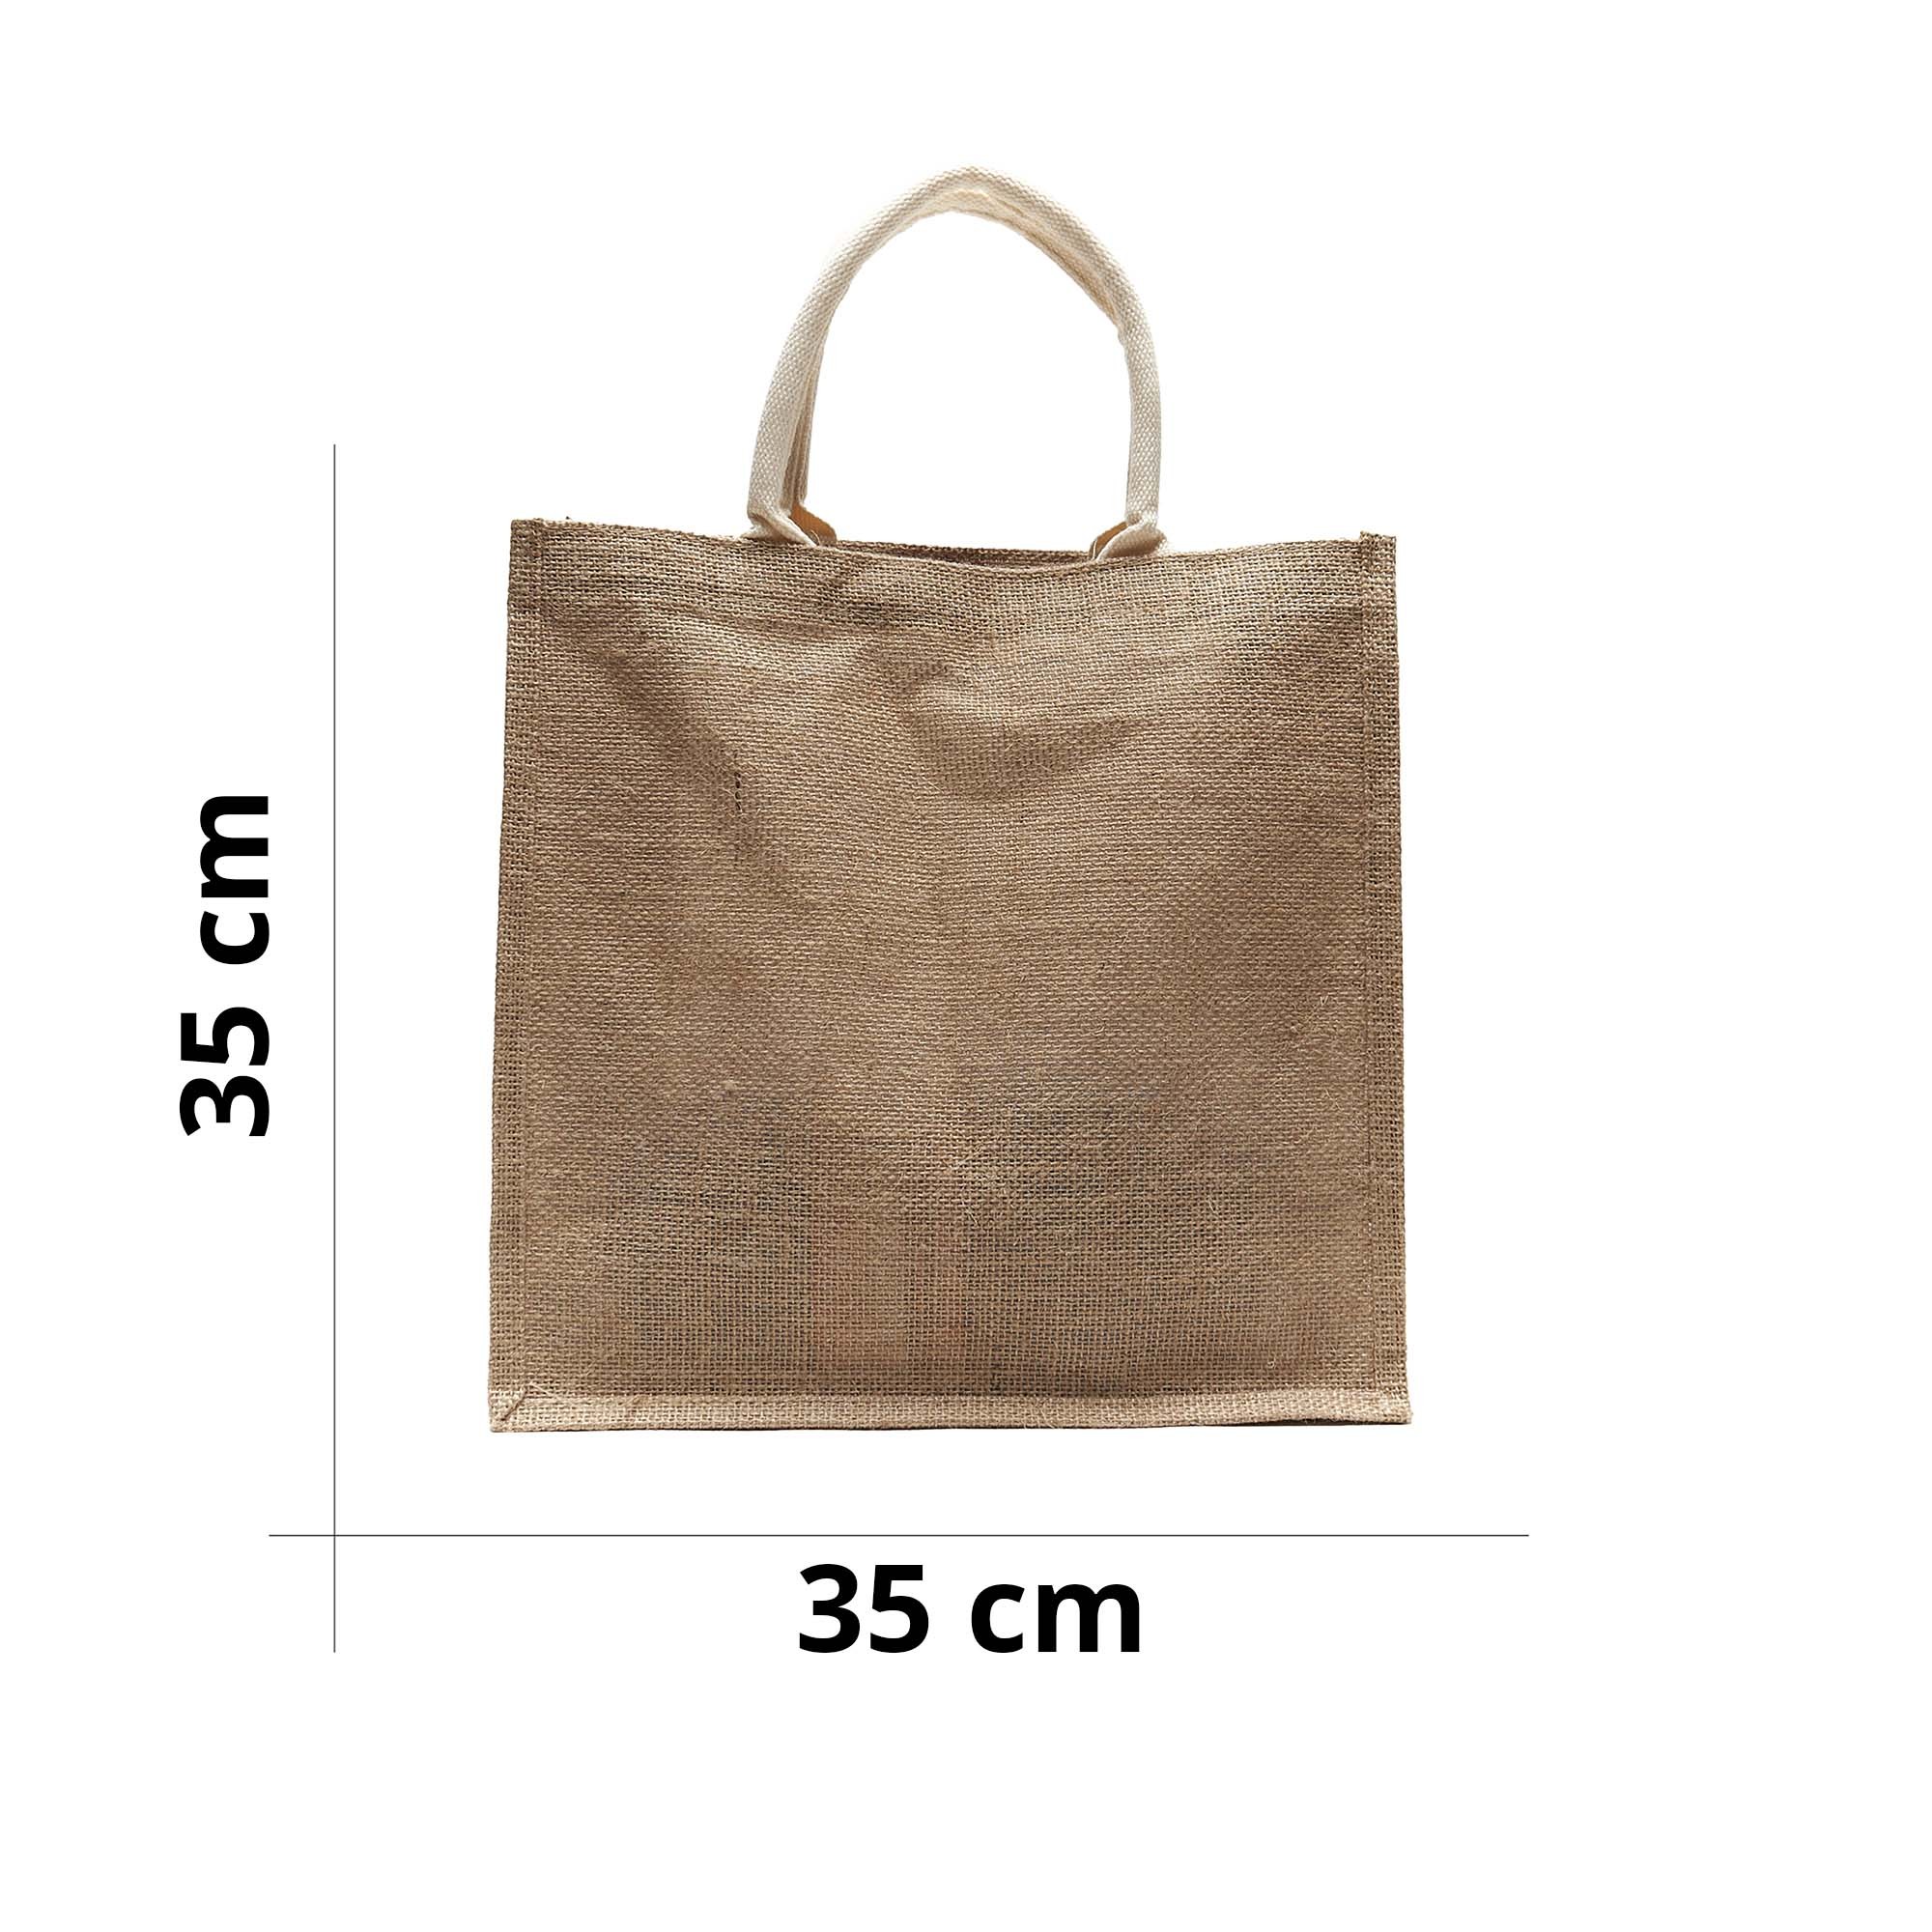 Tote Bag in tela, per decorazioni fai-da-te, dimensioni: 34 x 39